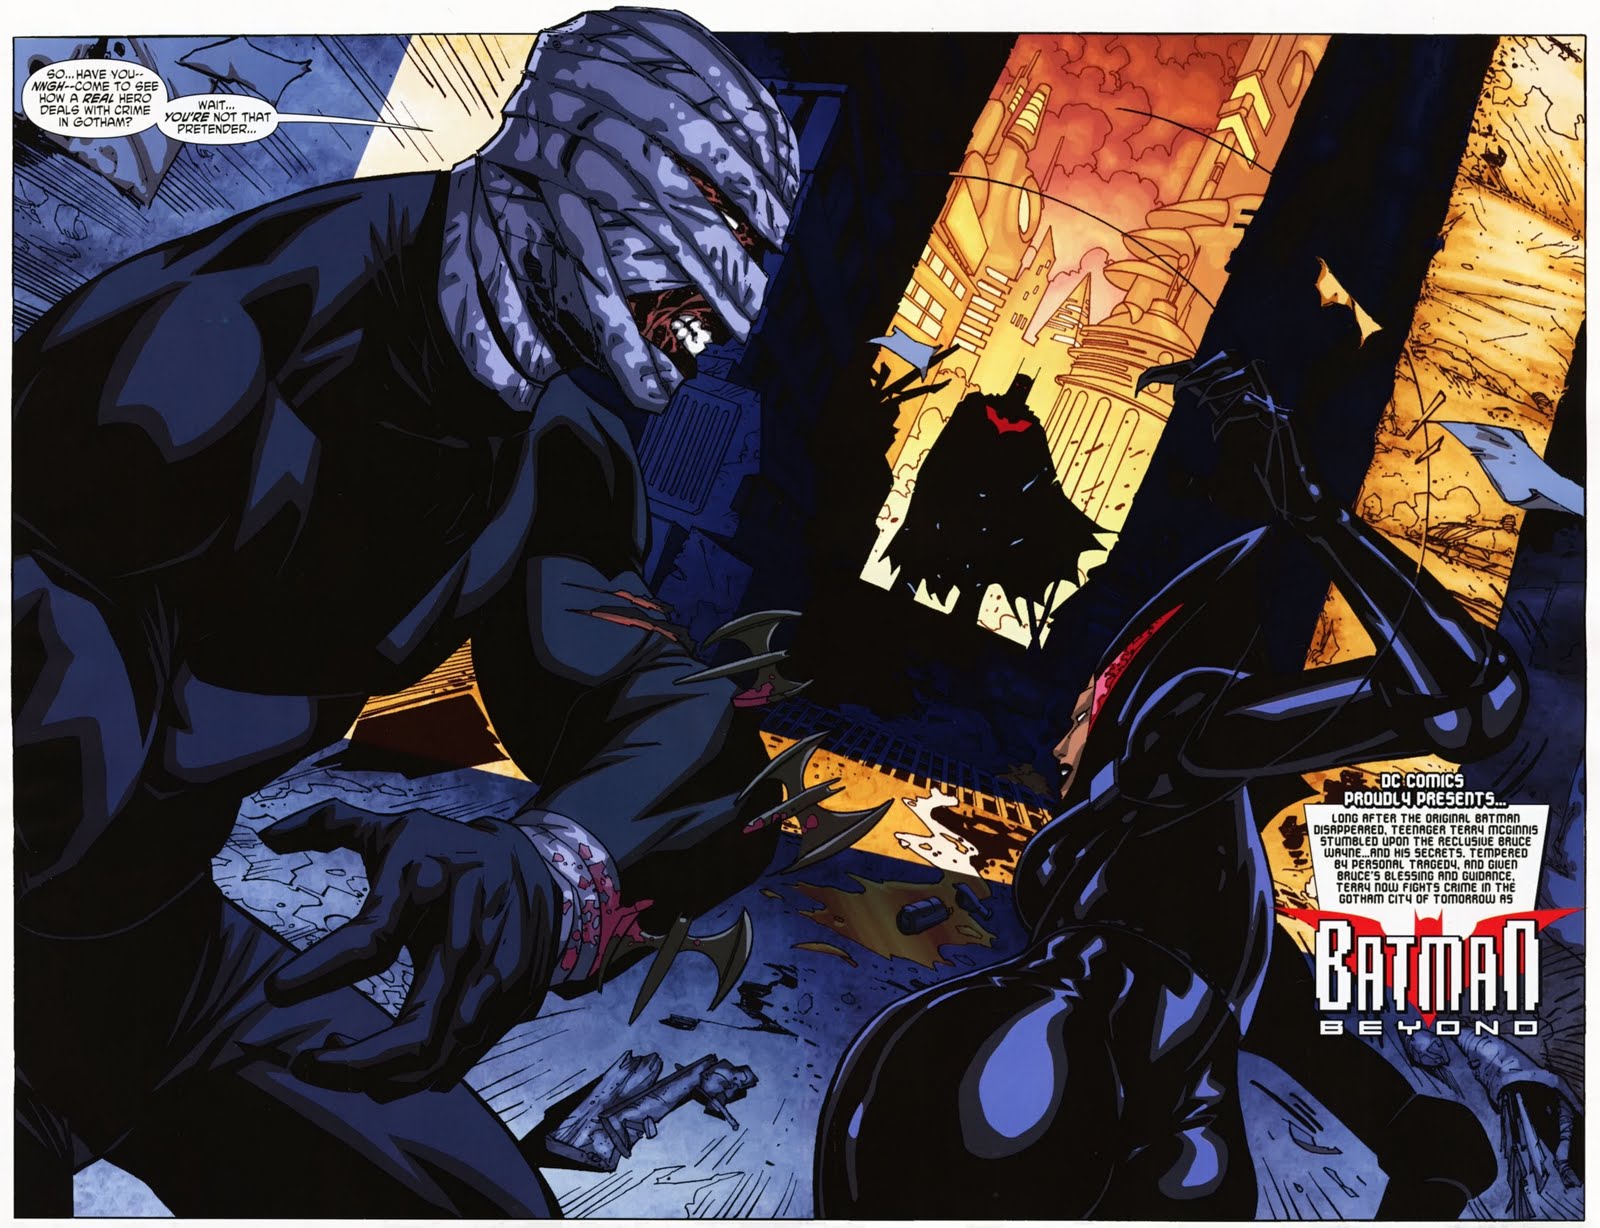 X-men Supreme: Batman Beyond #4 - Secrets and Setbacks